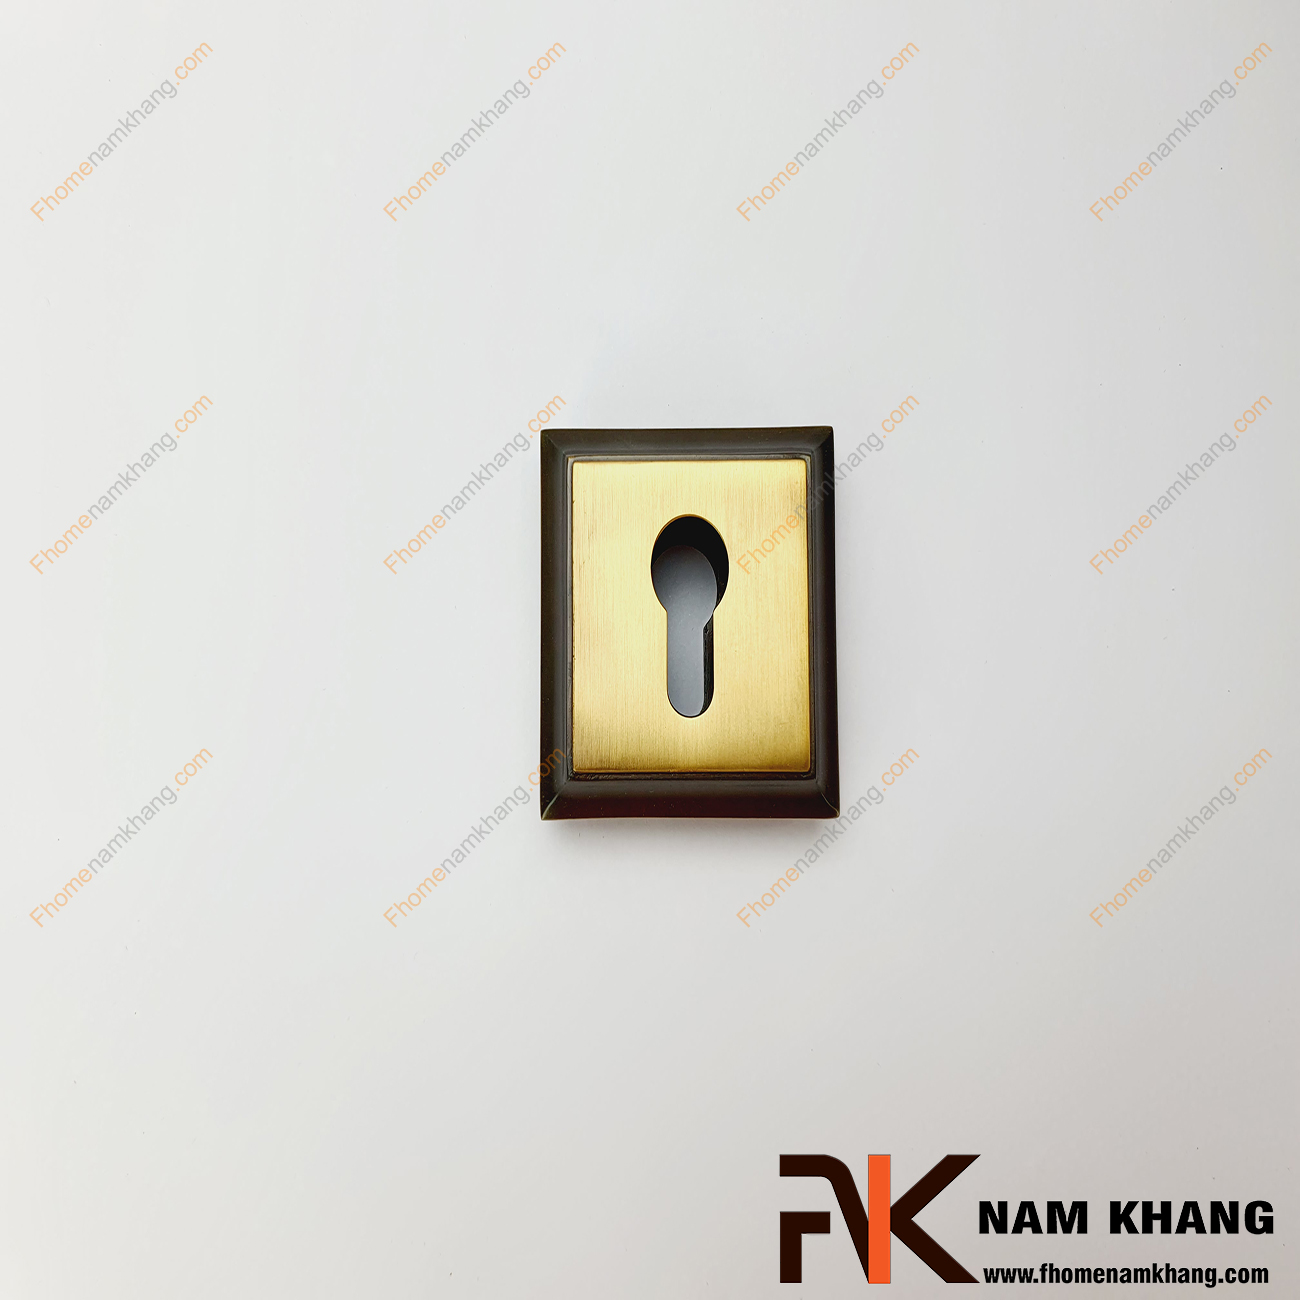 Khóa âm cửa mở bằng đồng cao cấp NK566KA-RX - dòng khóa cửa nhỏ gọn sử dụng được cho nhiều dạng cửa từ chất liệu gỗ đến nhôm, inox,...Đặc trưng của dòng khóa cửa này ở sự nhỏ gọn, tiện lợi, không quá nhiều chi tiết nhưng vẫn đảm bảo độ thâm mĩ và an toàn cao.